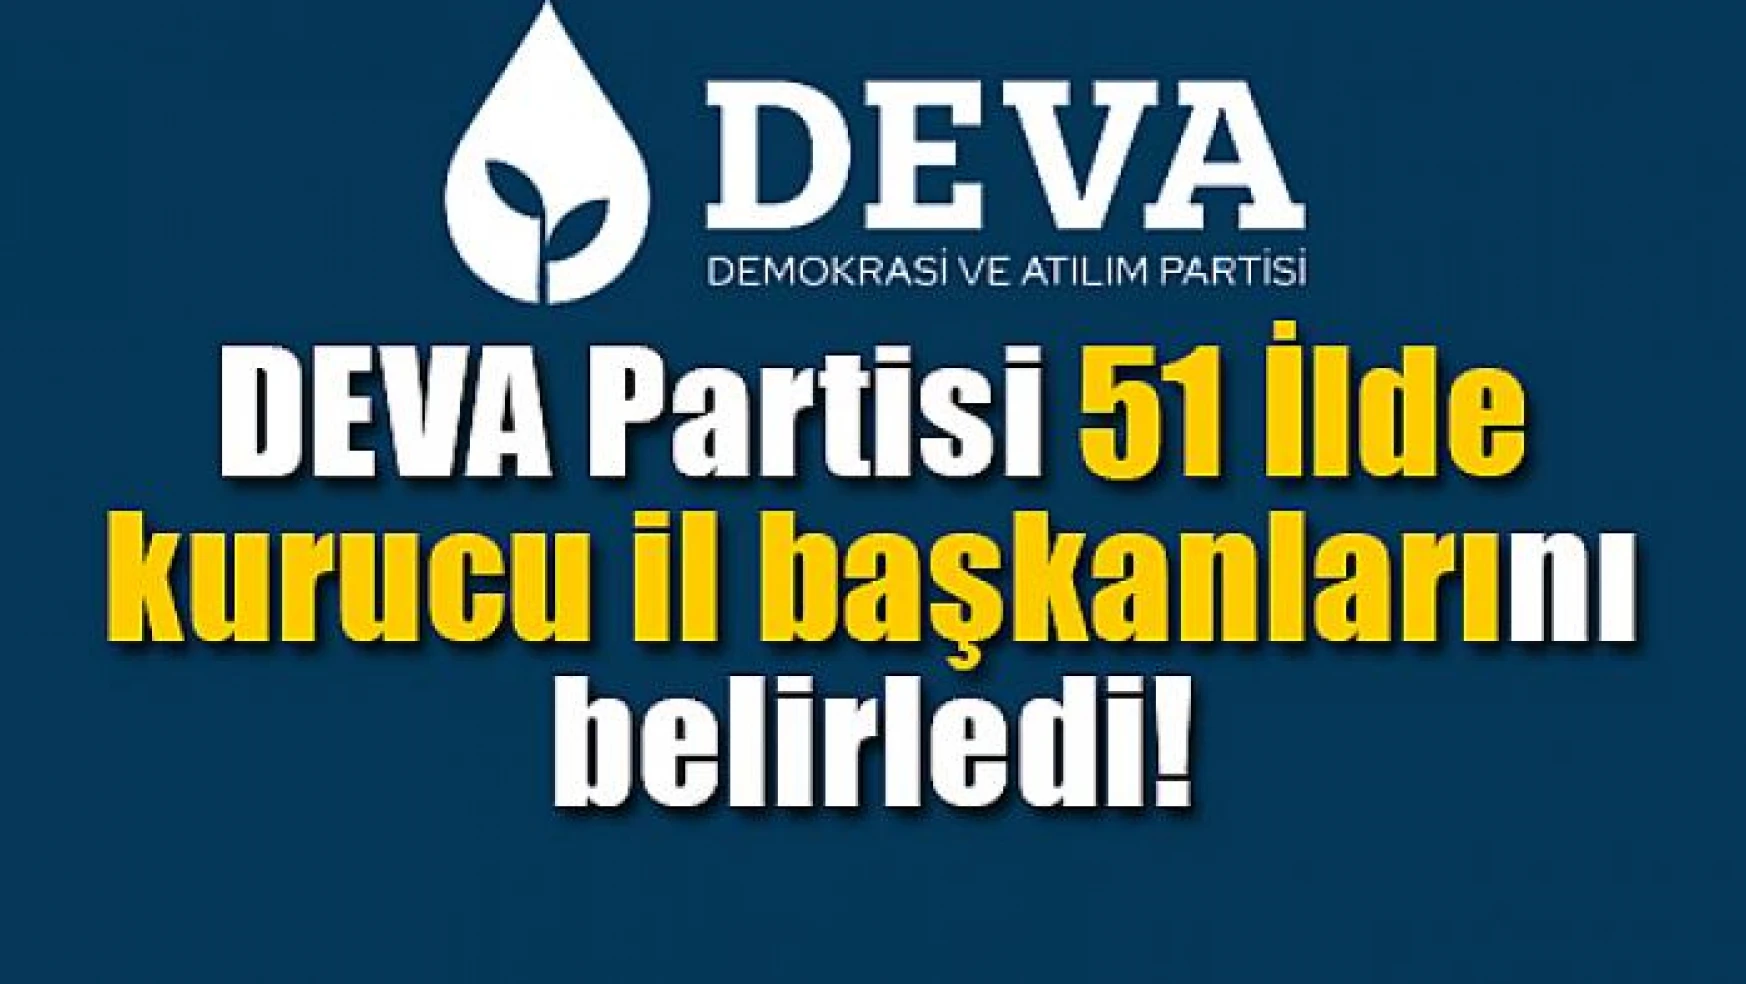 DEVA Partisi 51 İlde kurucu il başkanlarını belirledi